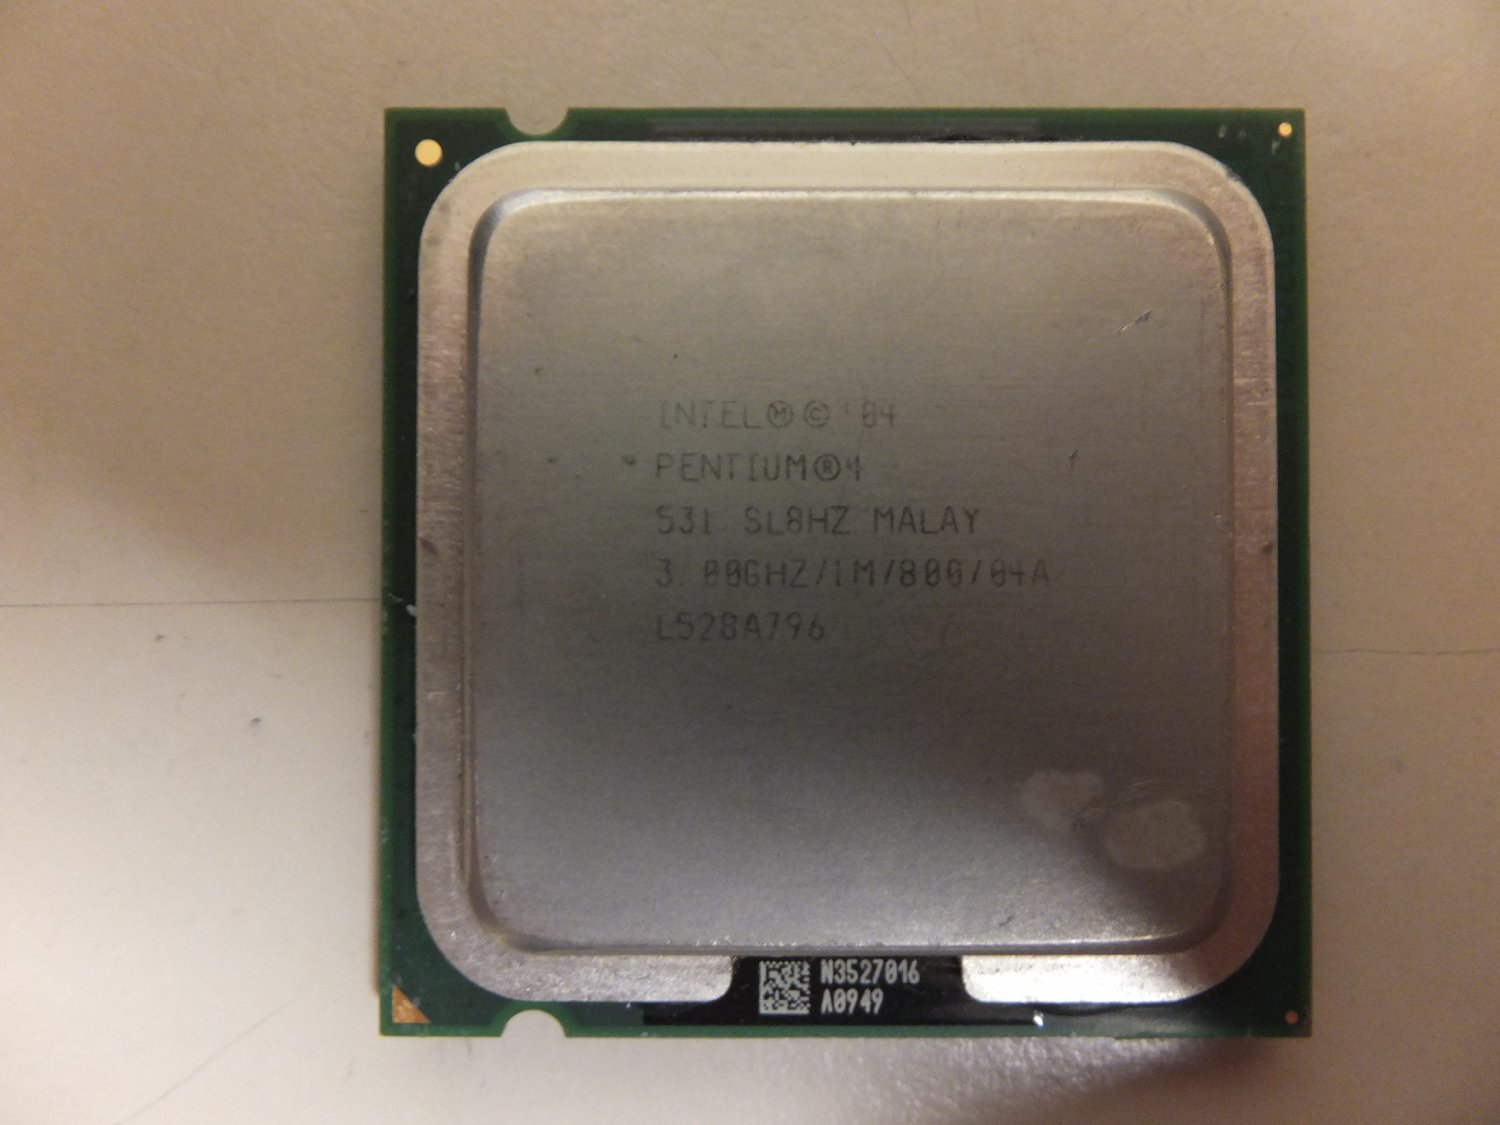 Intel pentium 4 3.00 ghz. Intel Pentium 4 CPU 3.00GHZ 3.00GHZ. Intel 04 Pentium 4 3.00GHZ/1m/800/04a. Intel Pentium 4 3.00. Процессор Intel Pentium 4 531 lga775.